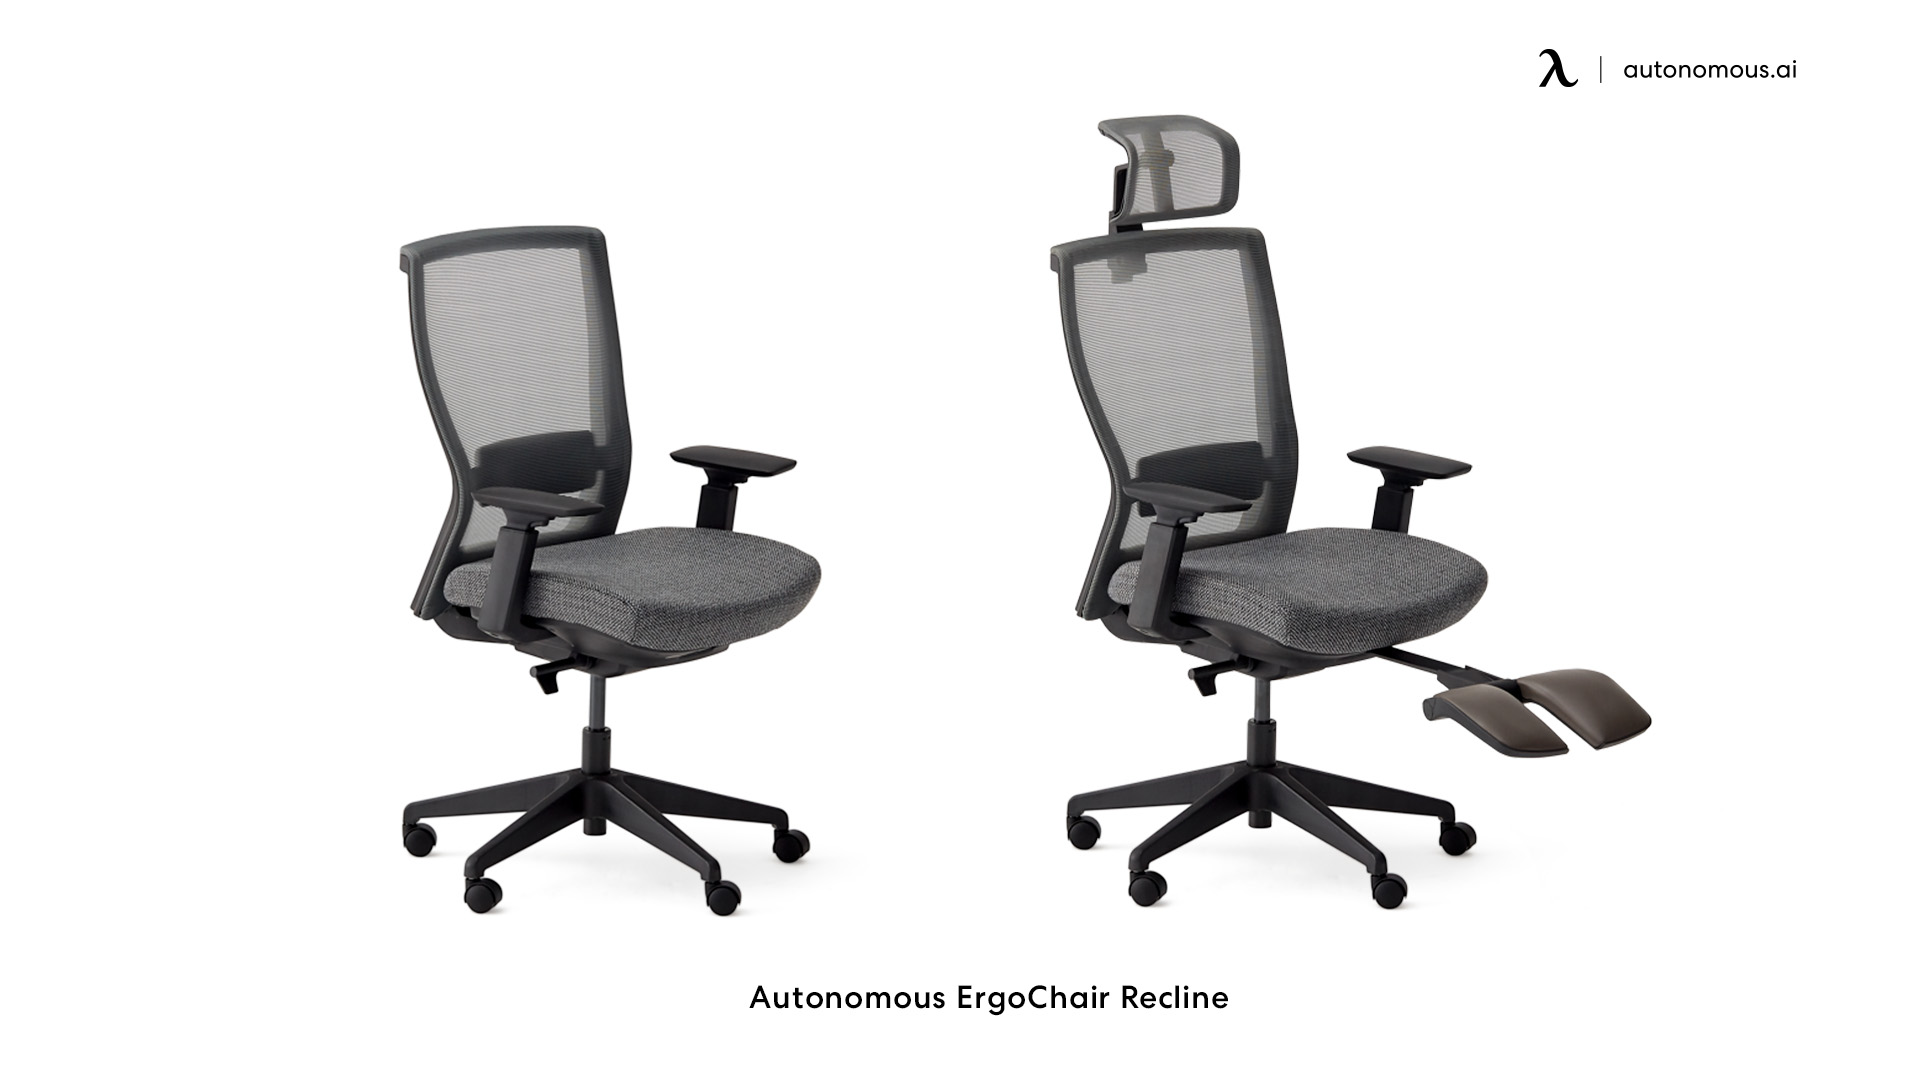 ErgoChair Recline small home office chair